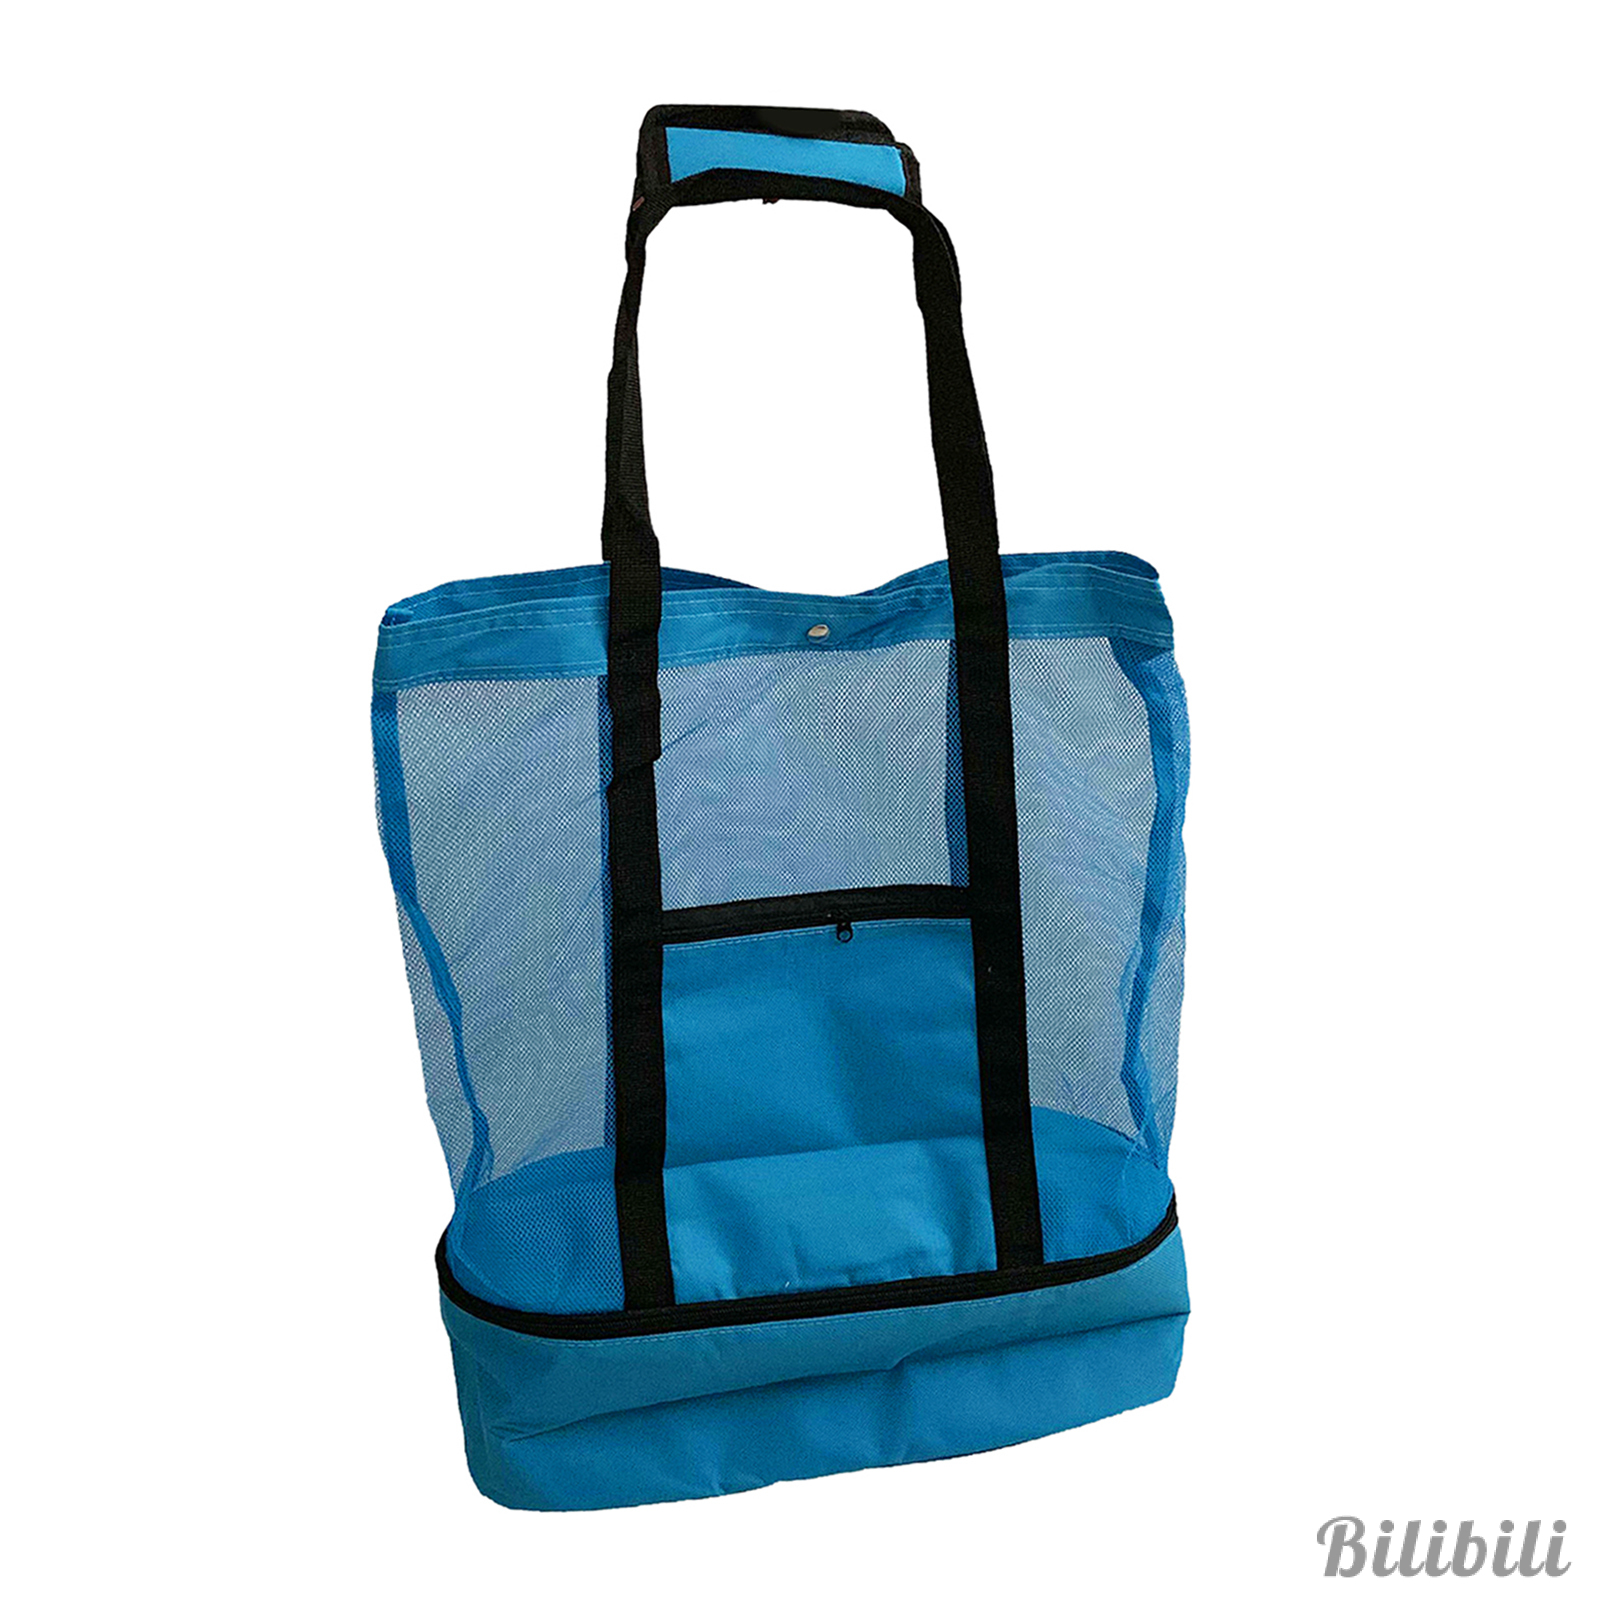 Túi tote canvas cotton đựng hàng tạp hóa có thể tái sử dụng cho mua sắm/đi chợ/đi biển/đi bơi/dã ngoại/ăn trưa/du lịch